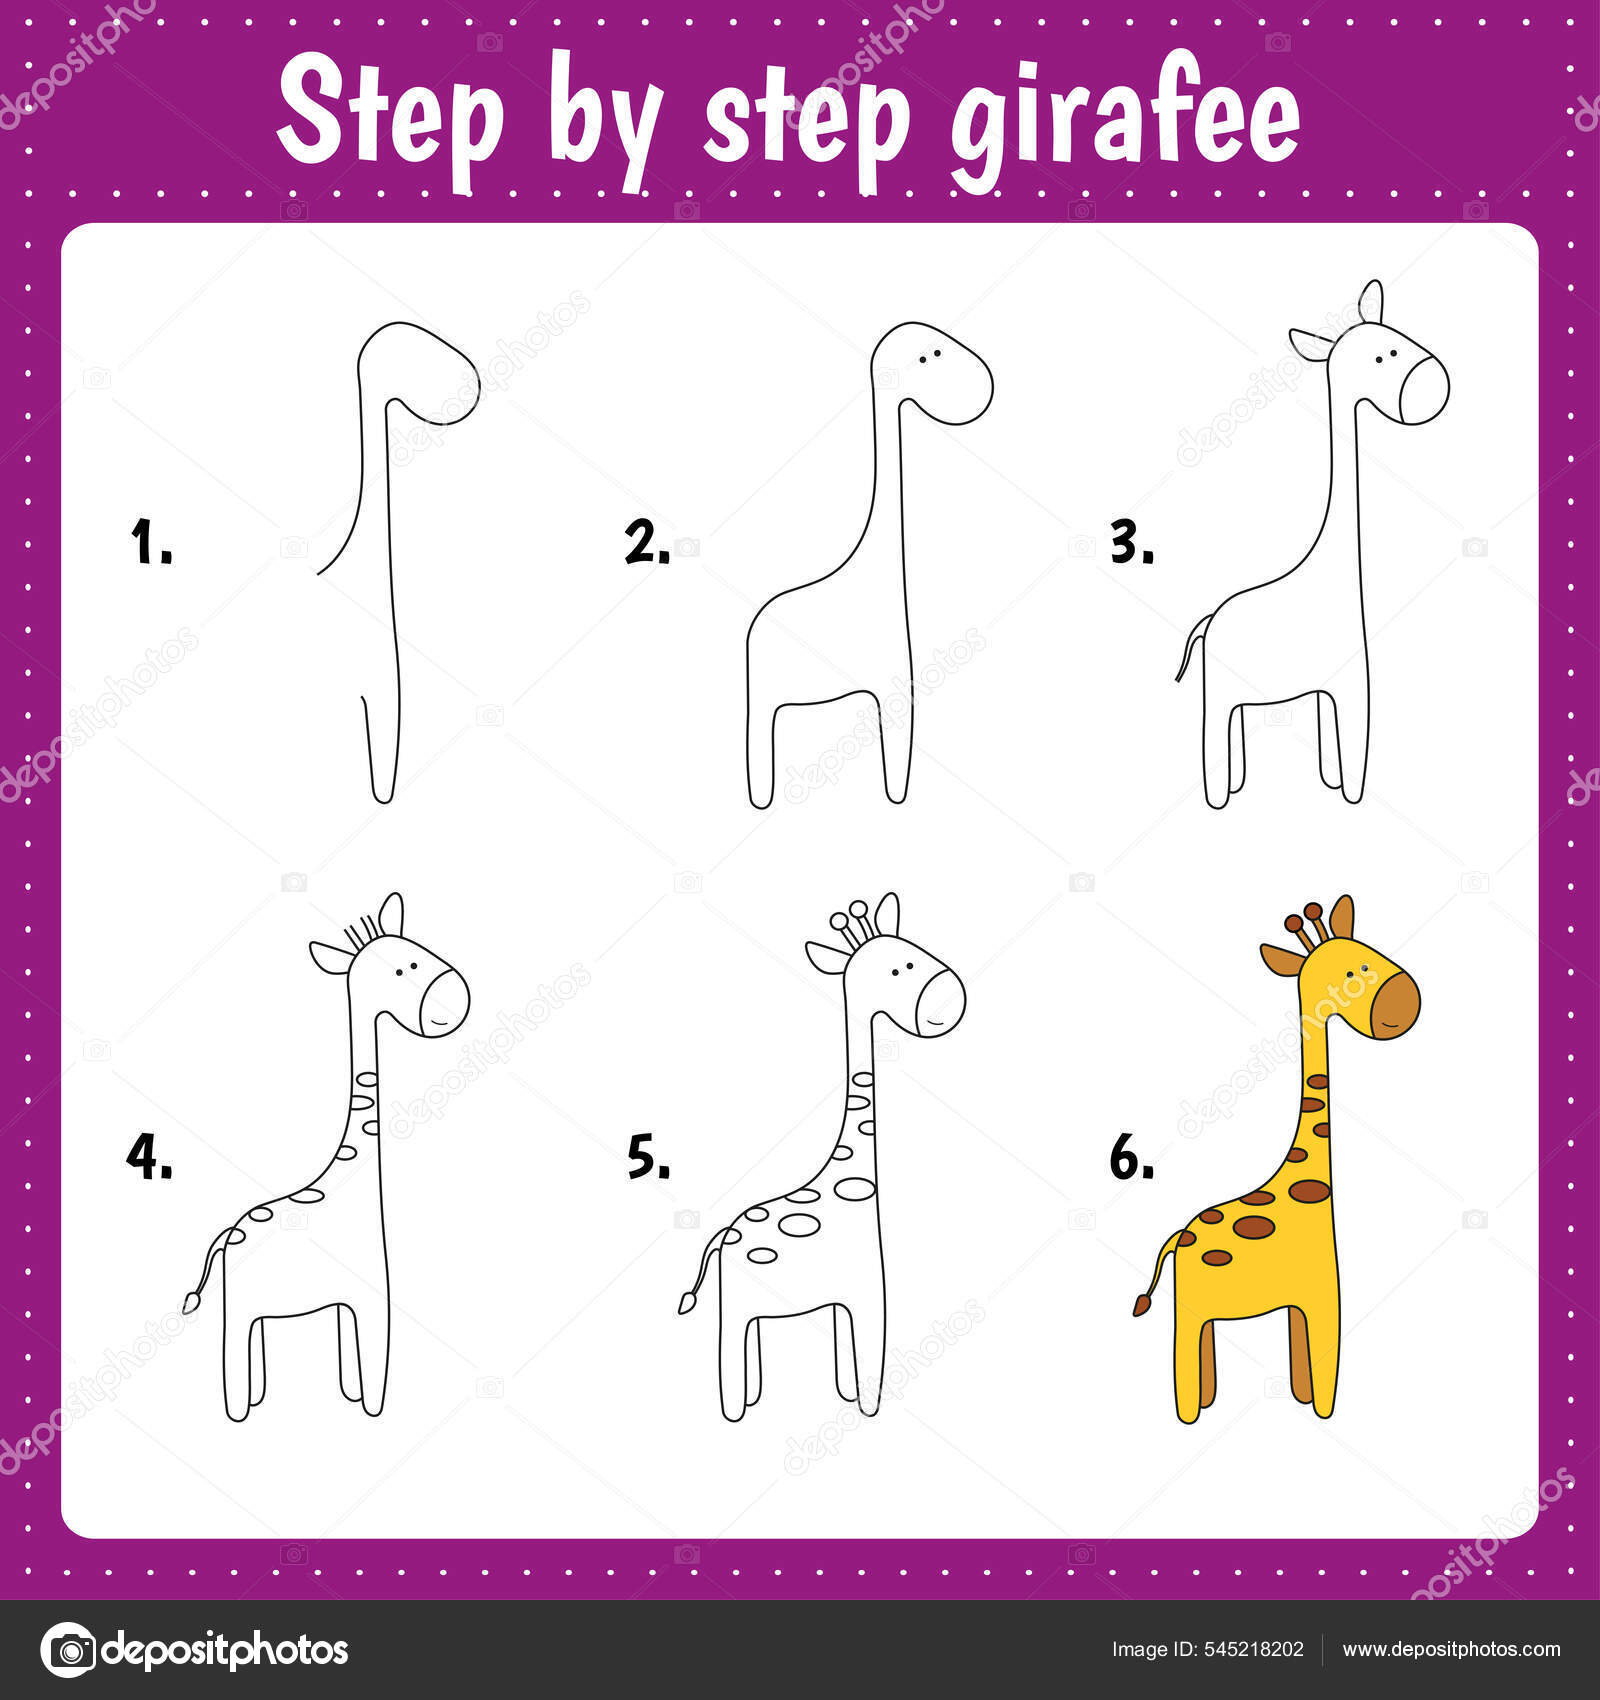 https://st.depositphotos.com/52322992/54521/v/1600/depositphotos_545218202-stock-illustration-drawing-lesson-children-how-draw.jpg